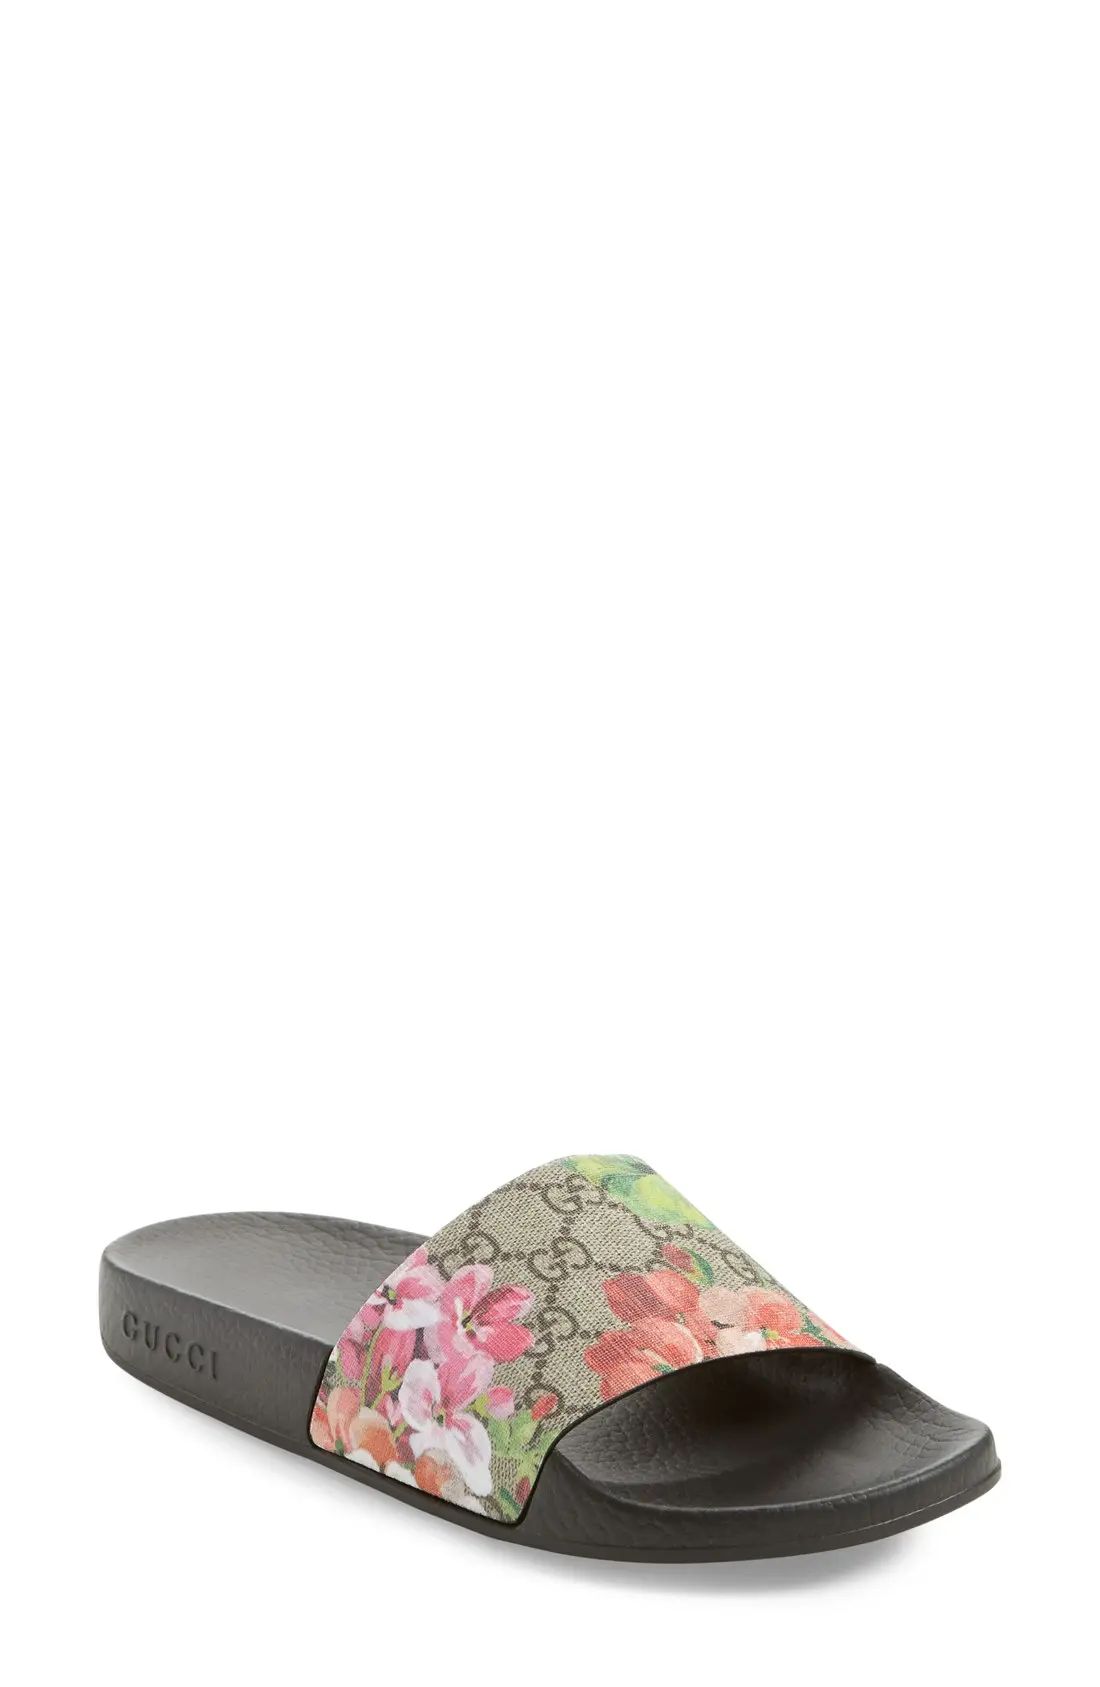 Women's Gucci Slide Sandal, Size 6US - Black | Nordstrom